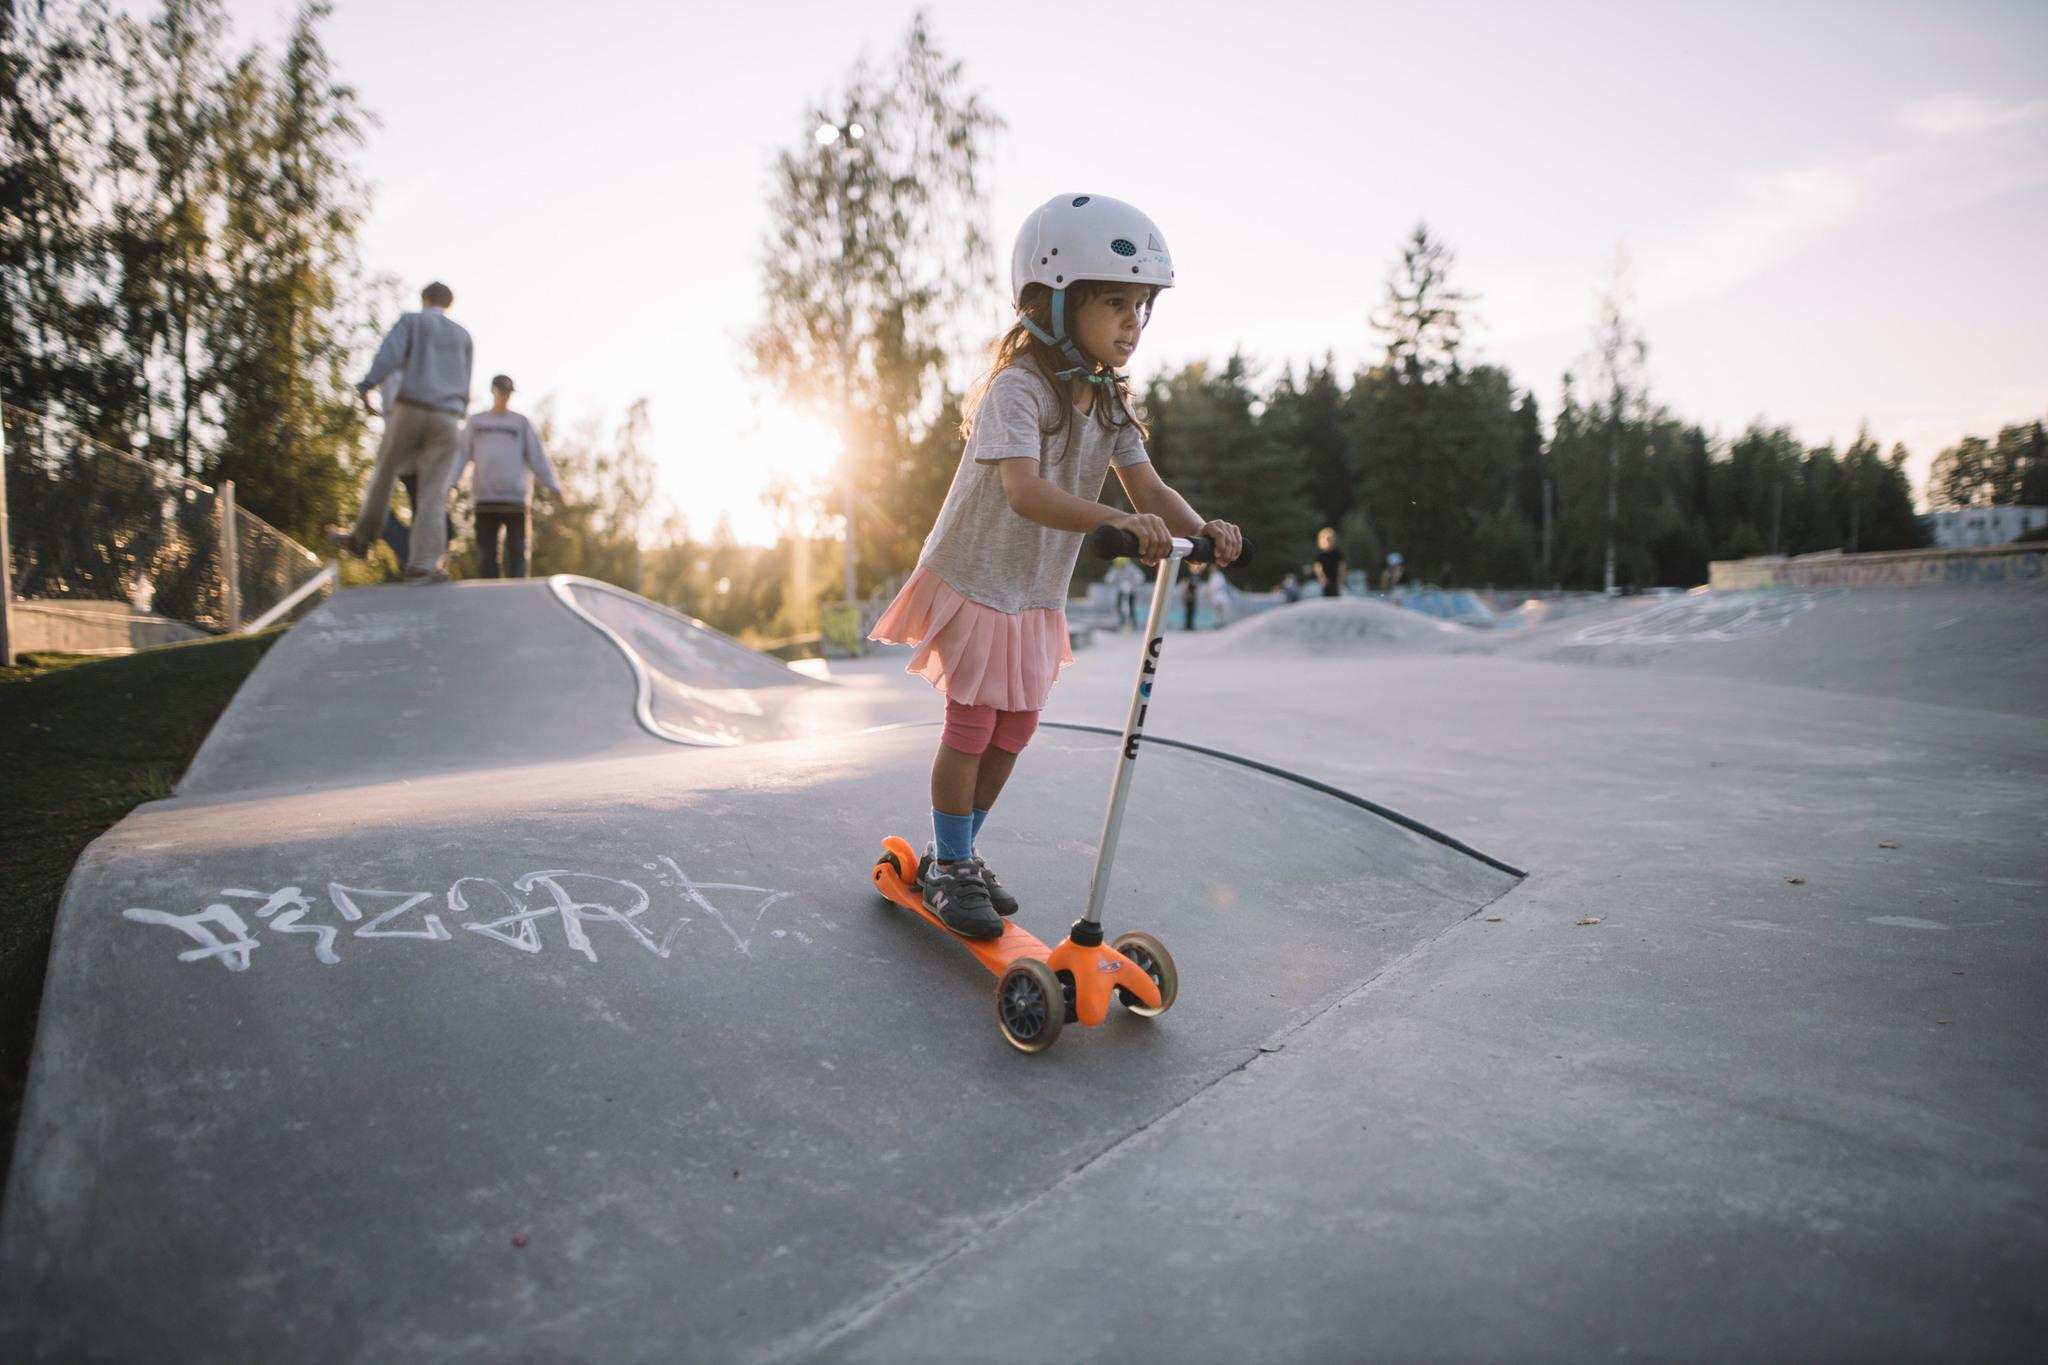 A little girl on a kickboard in a skatepark.